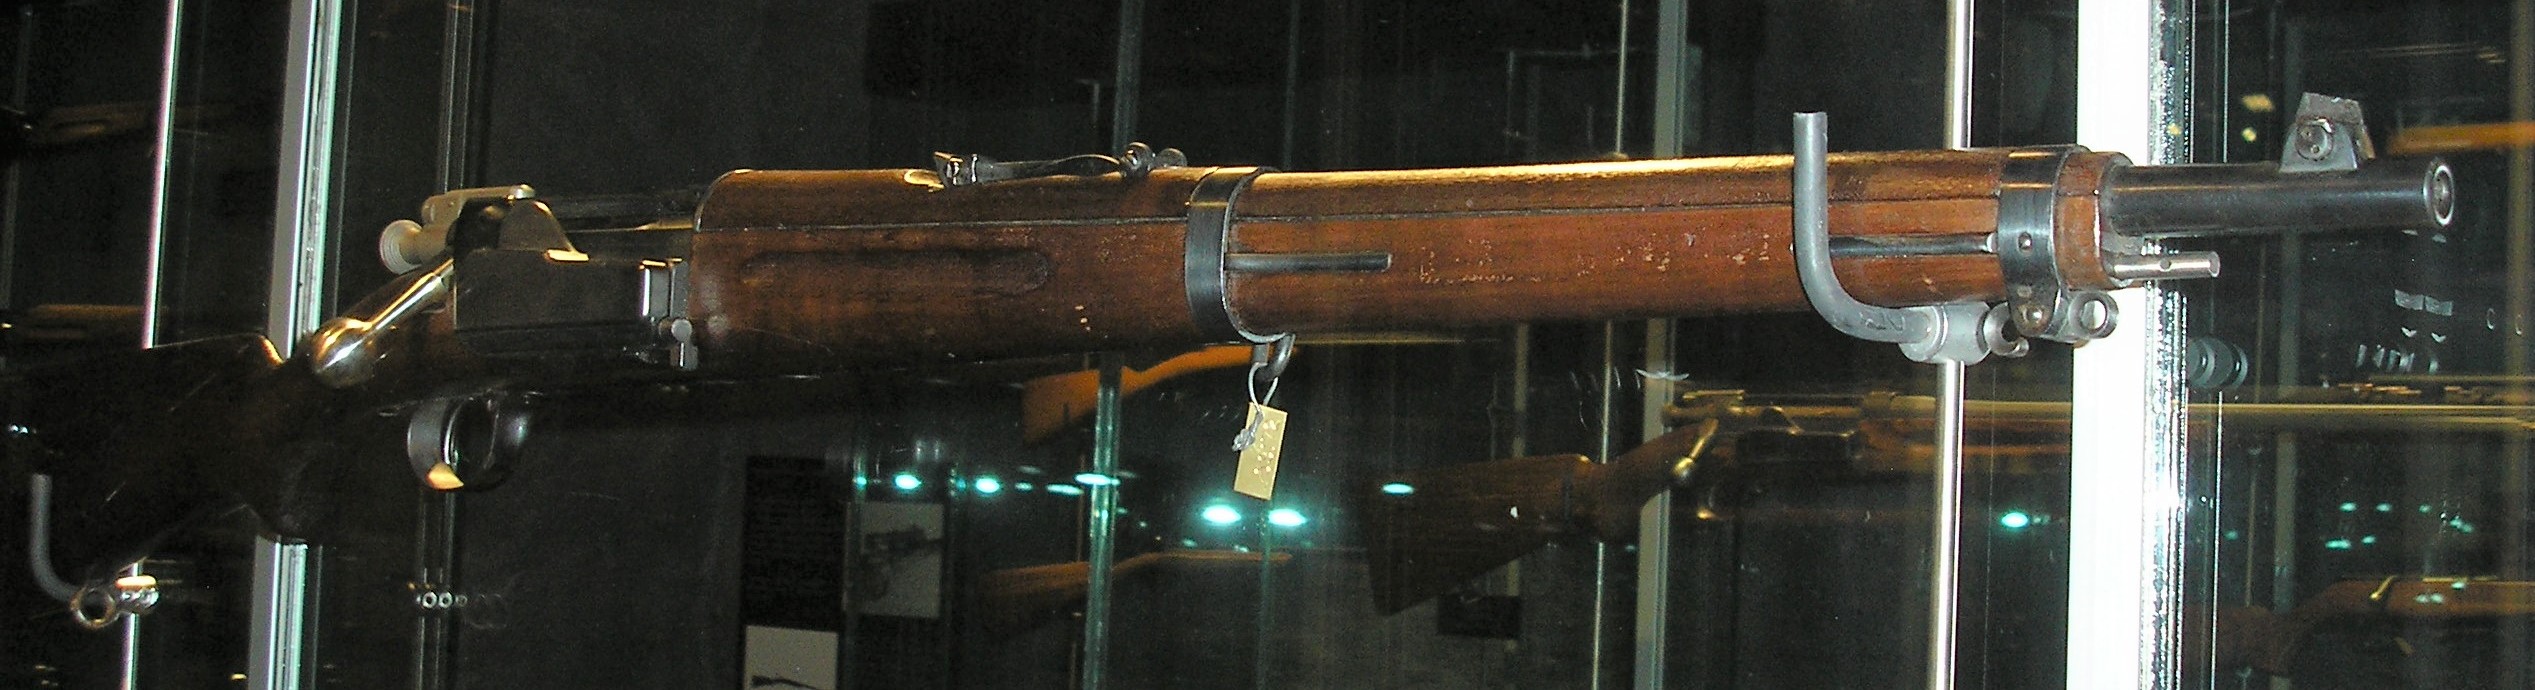 ./guns/rifle/bilder/Rifle-Kongsberg-Krag-M1907-MOD1-1.JPG